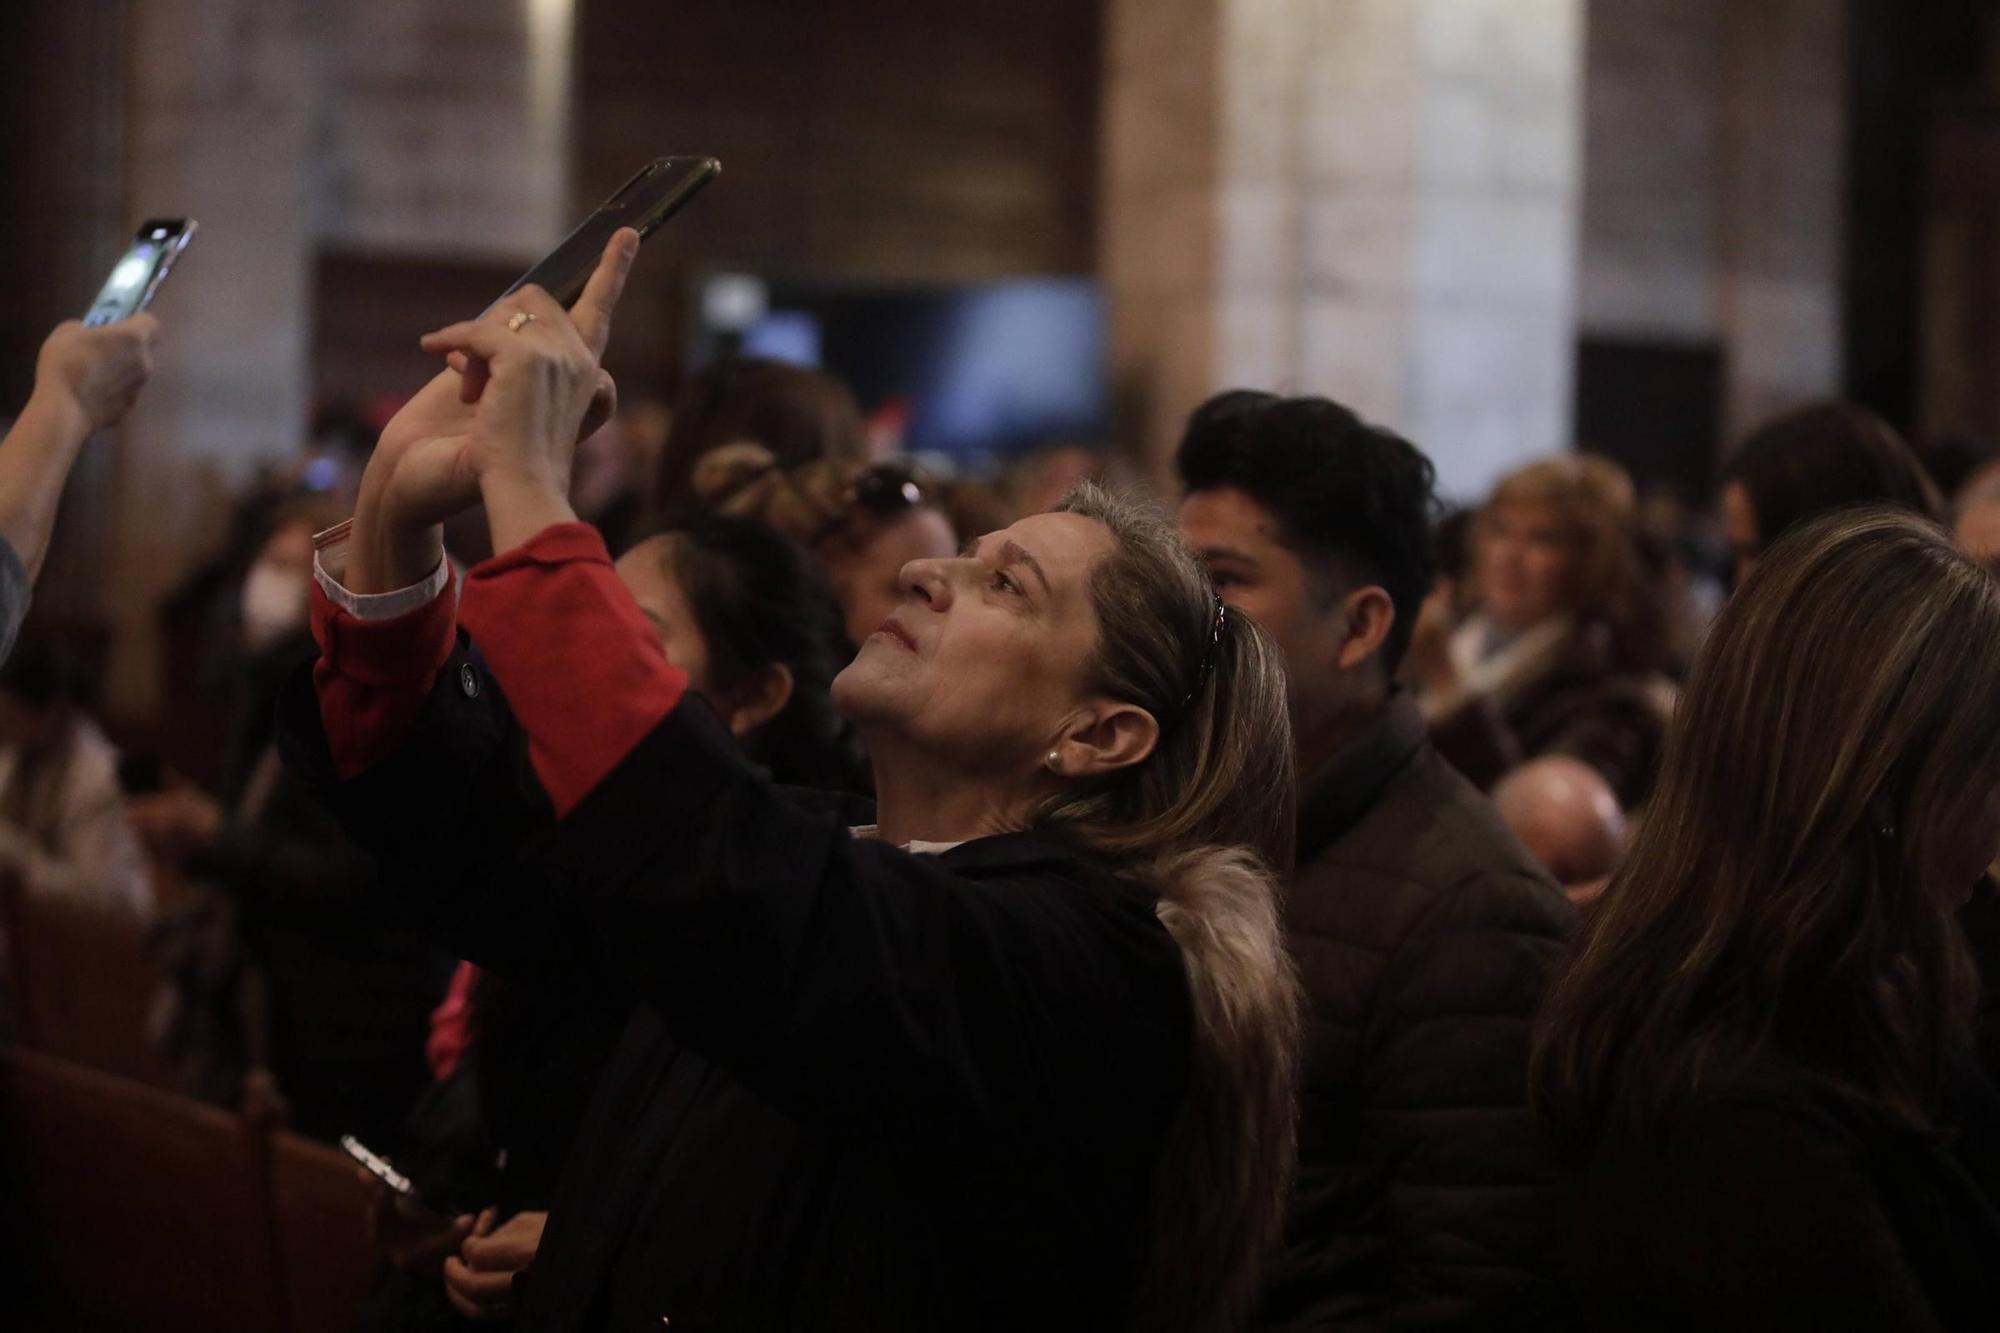 El 'Vuit de la Seu' ilumina la Catedral de Mallorca